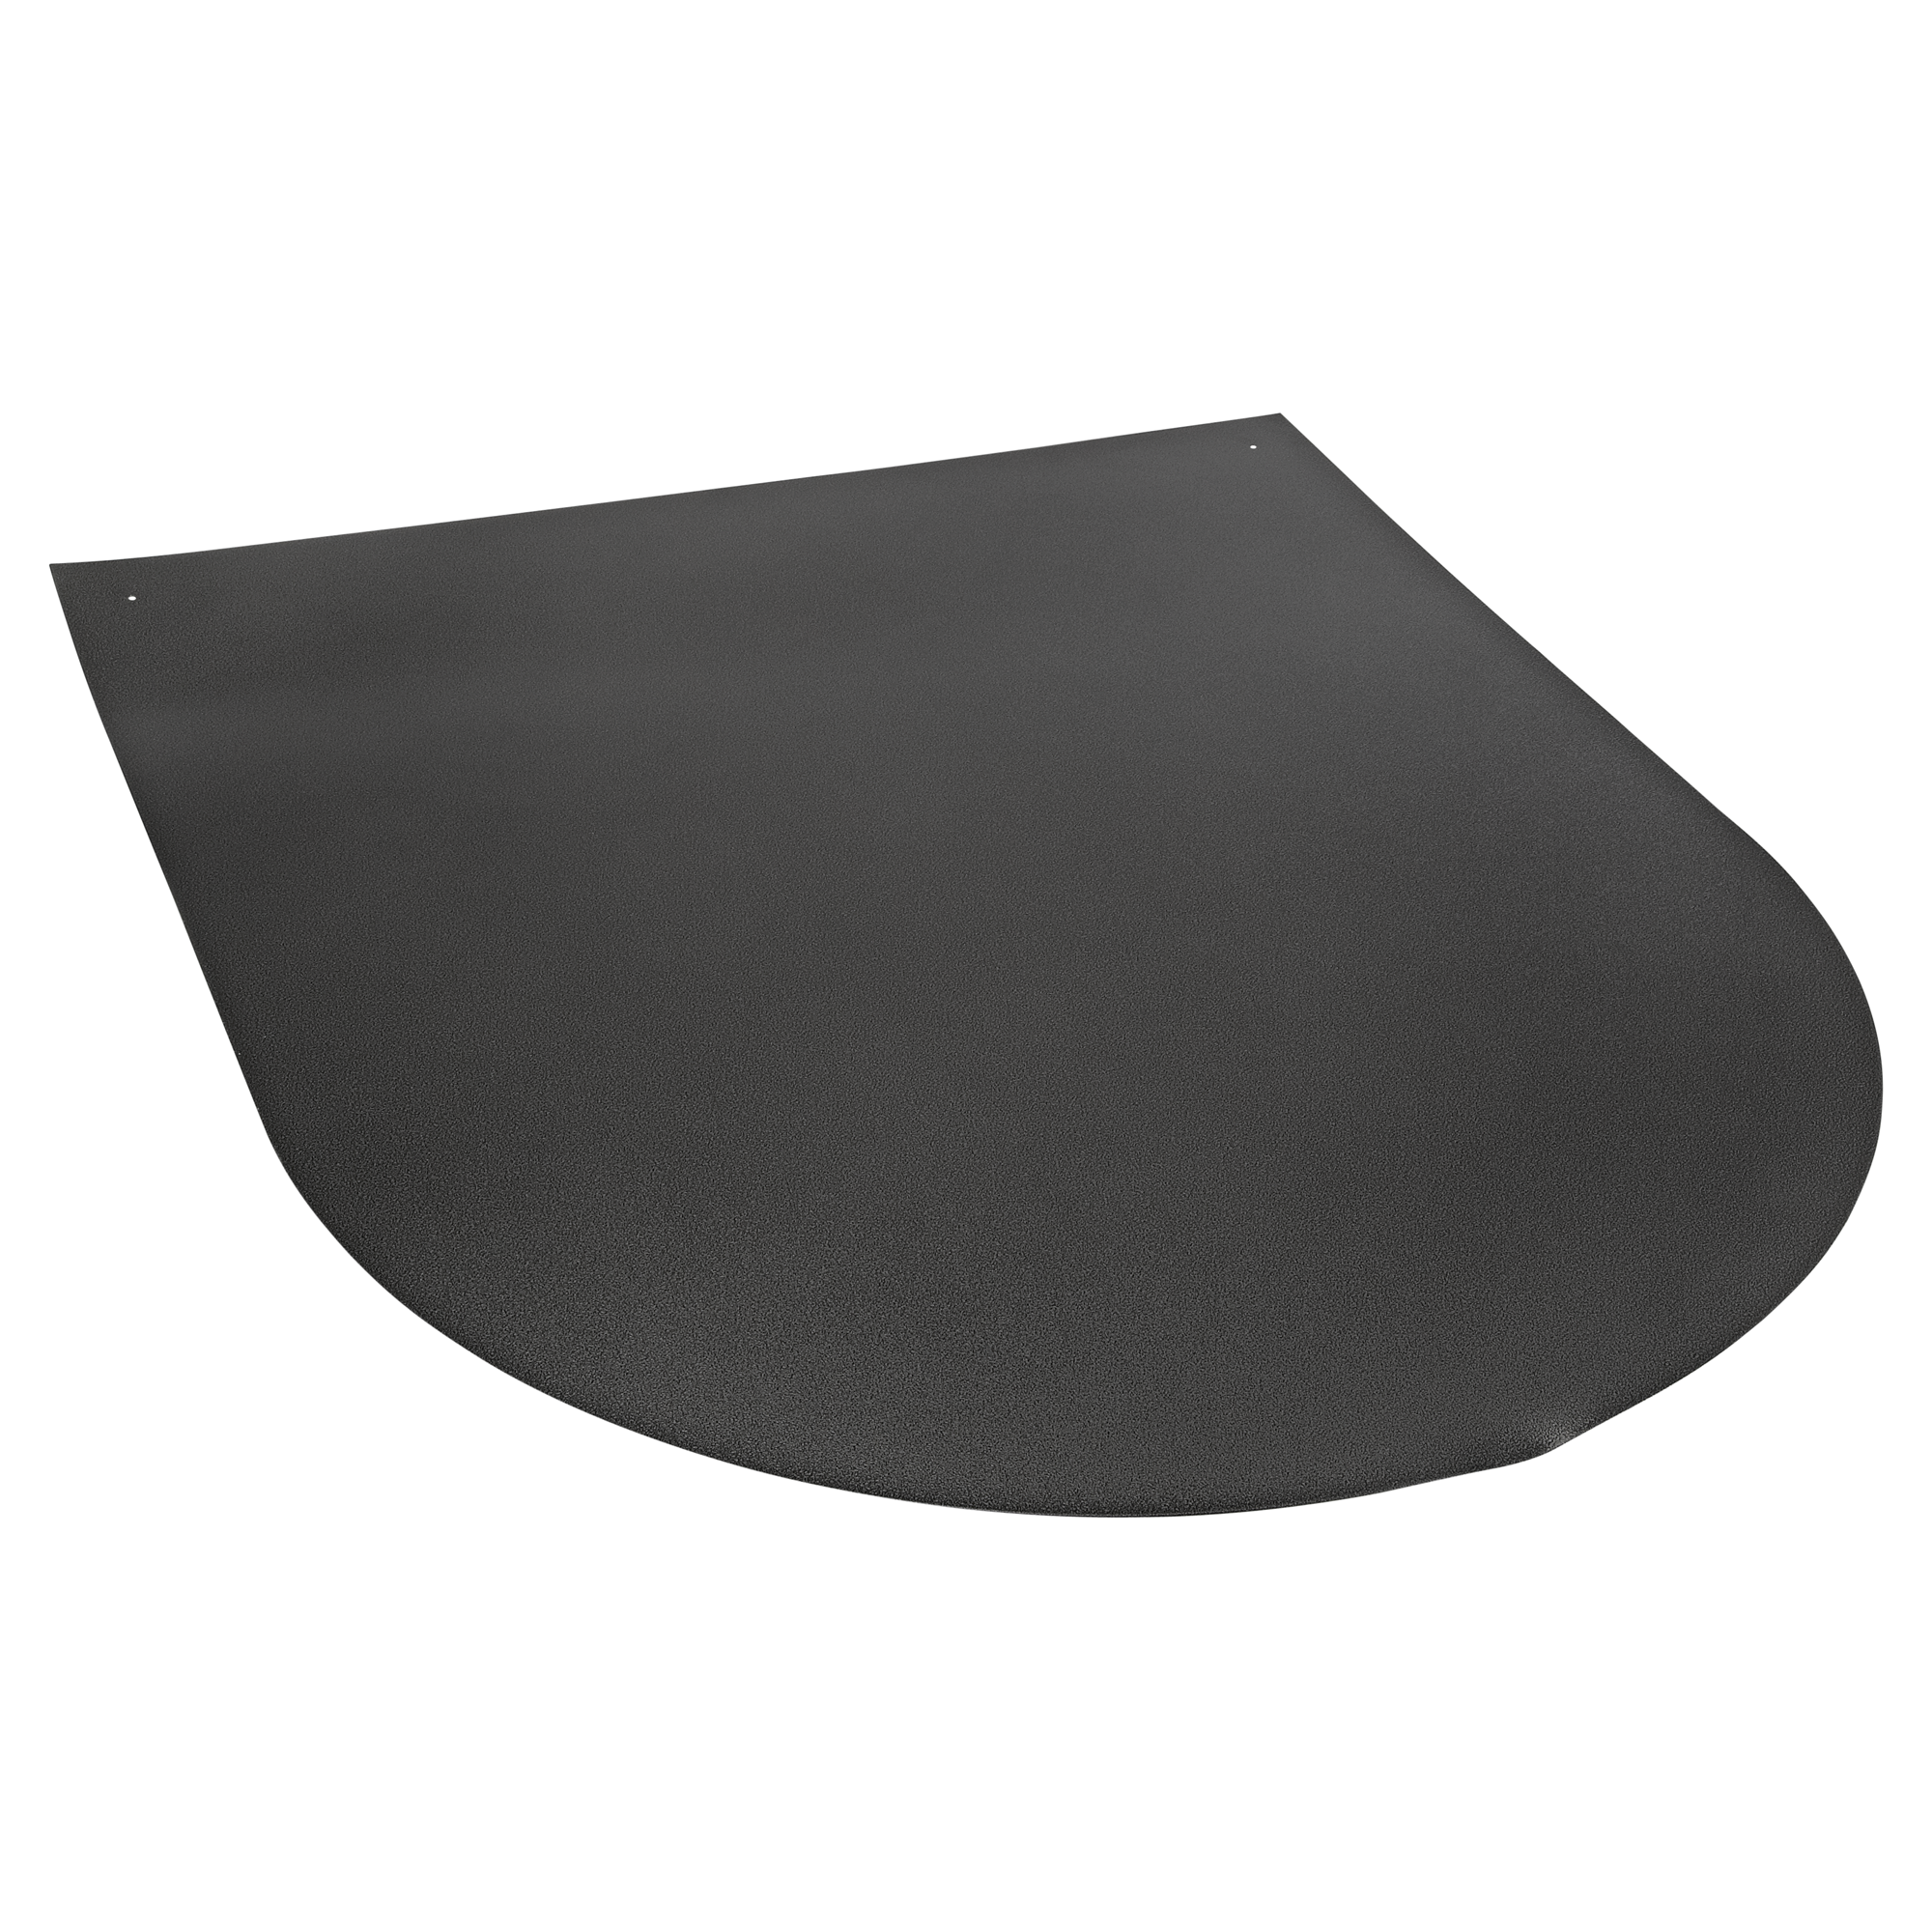 Funkenschutzplatte D-Form 100 x 120 x 0,15 cm Stahlblech silbern + product picture